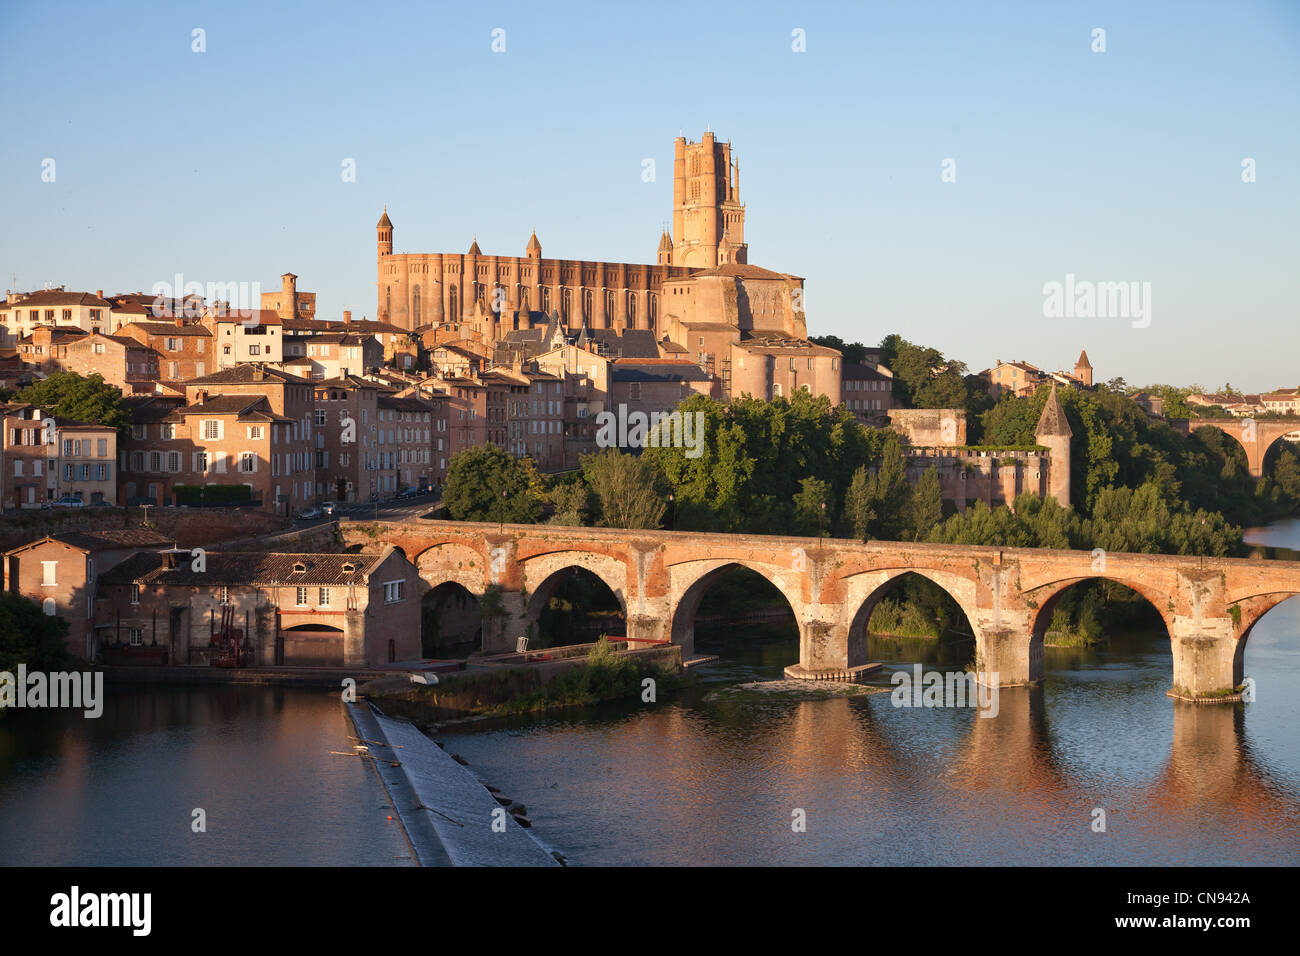 Frankreich, Tarn, Albi, der Bischofsstadt, aufgeführt als Weltkulturerbe der UNESCO, die Kathedrale Sainte Cecile die alte Brücke und die Stockfoto